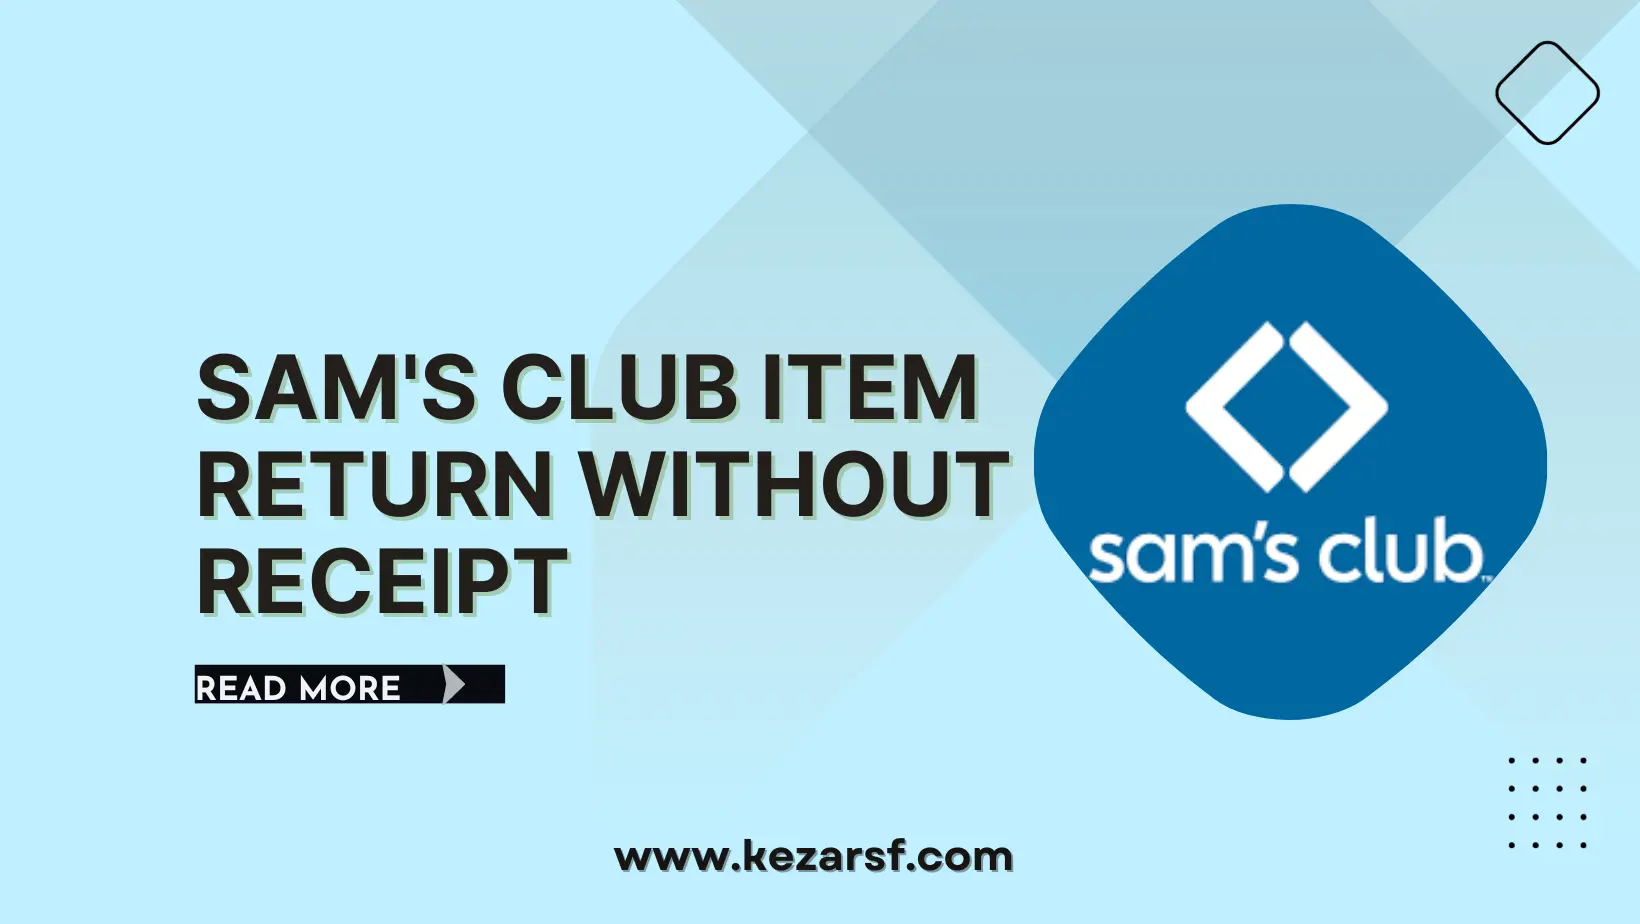 Sam's Club Item Return Without Receipt